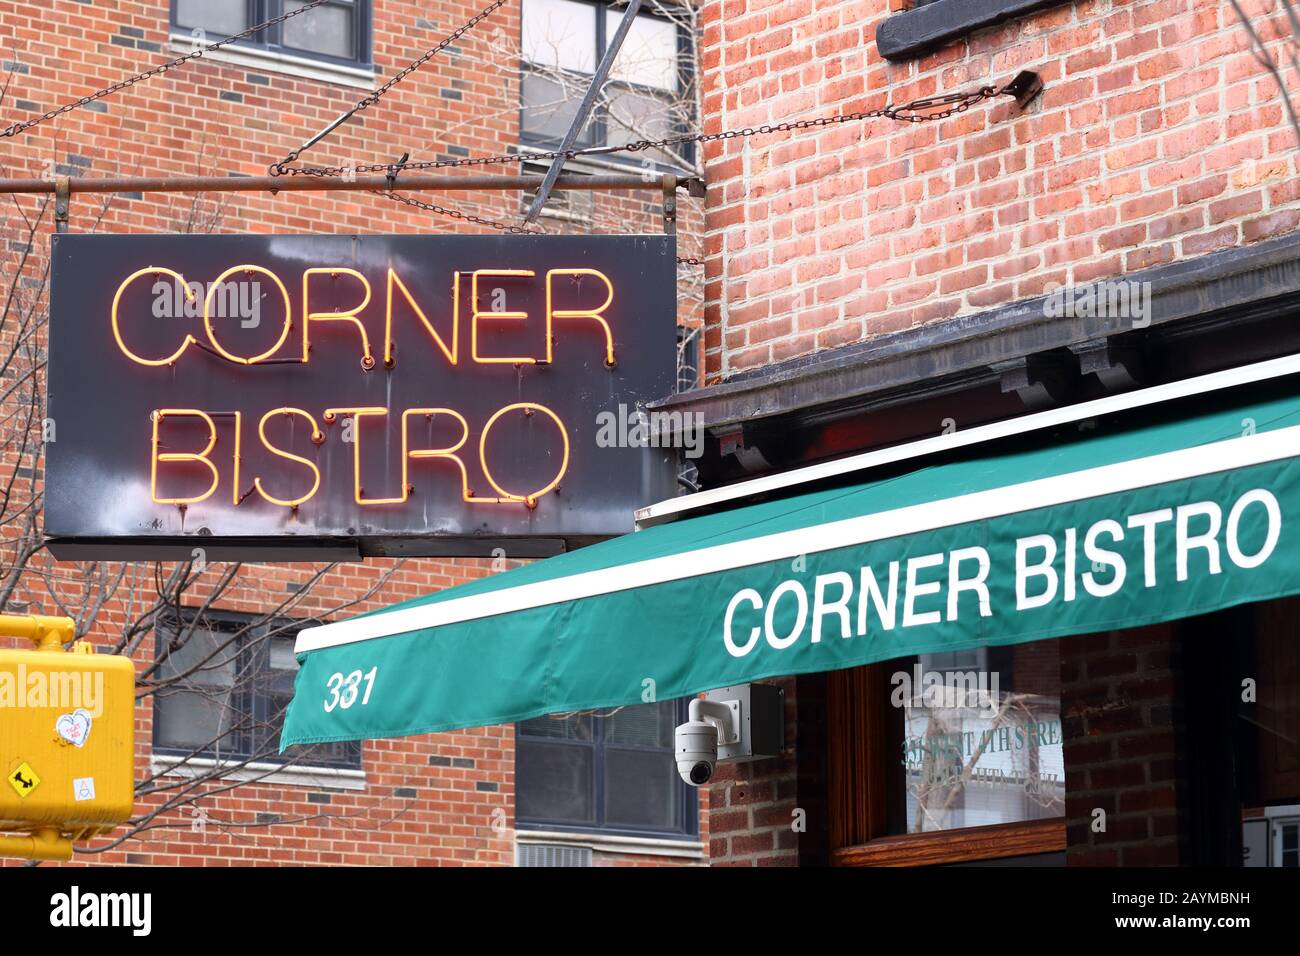 Corner Bistro, 331 West 4ème Street, New York, NY. Façade d'un pub célèbre pour ses hamburgers dans le Greenwich Village de Manhattan Banque D'Images